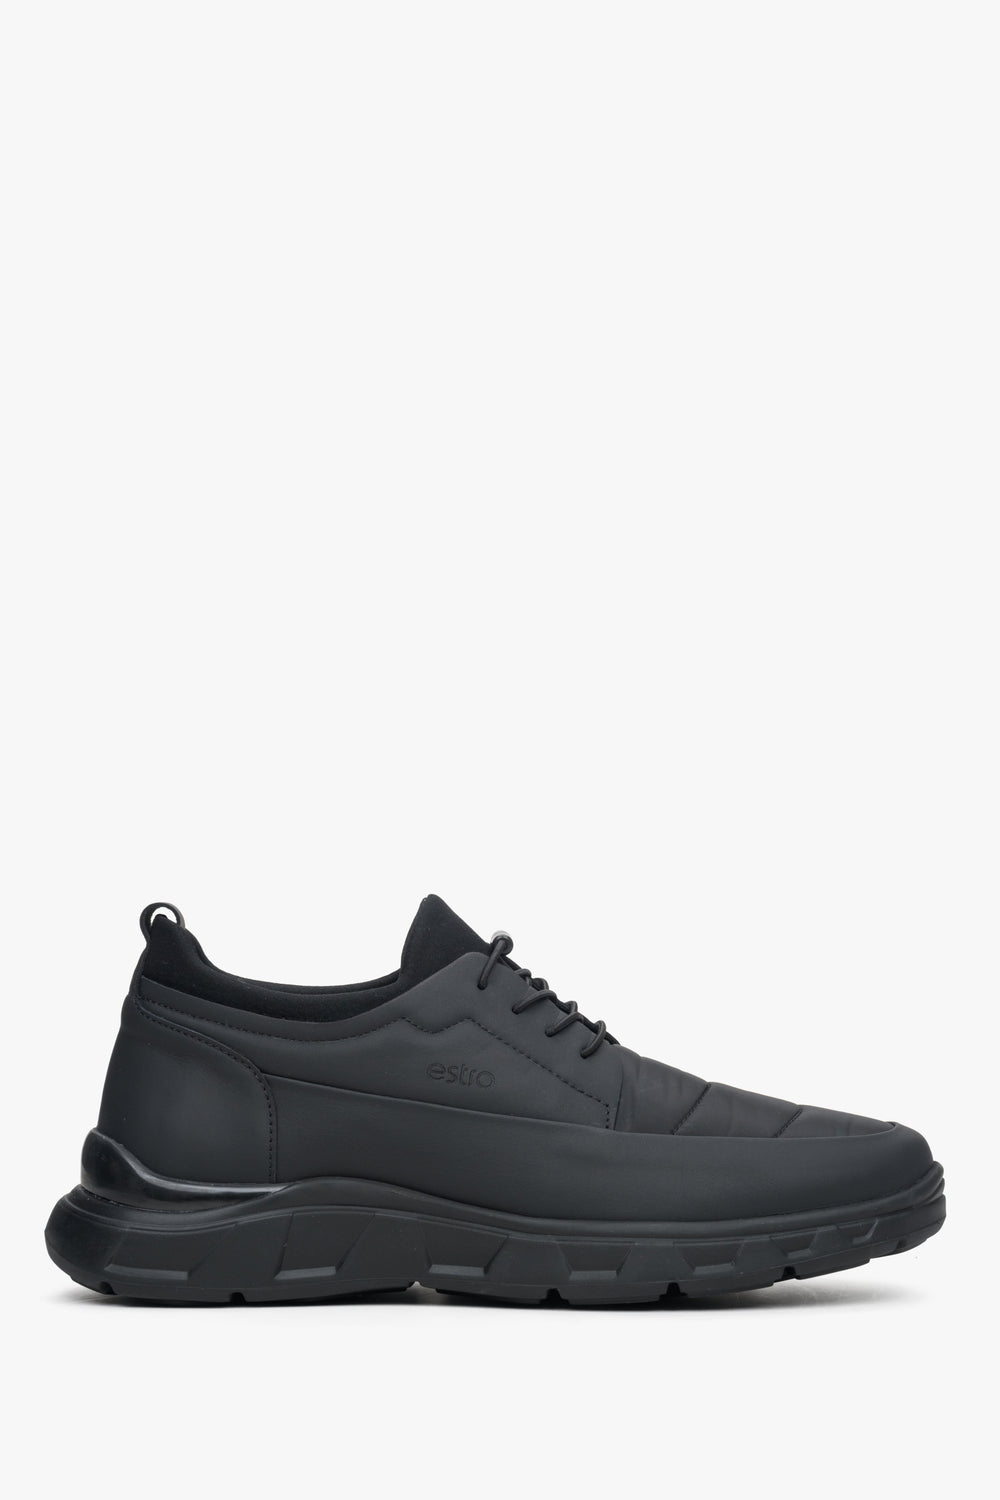 Miękkie sneakersy męskie w kolorze czarnym ze ściągaczem Estro ER00113803